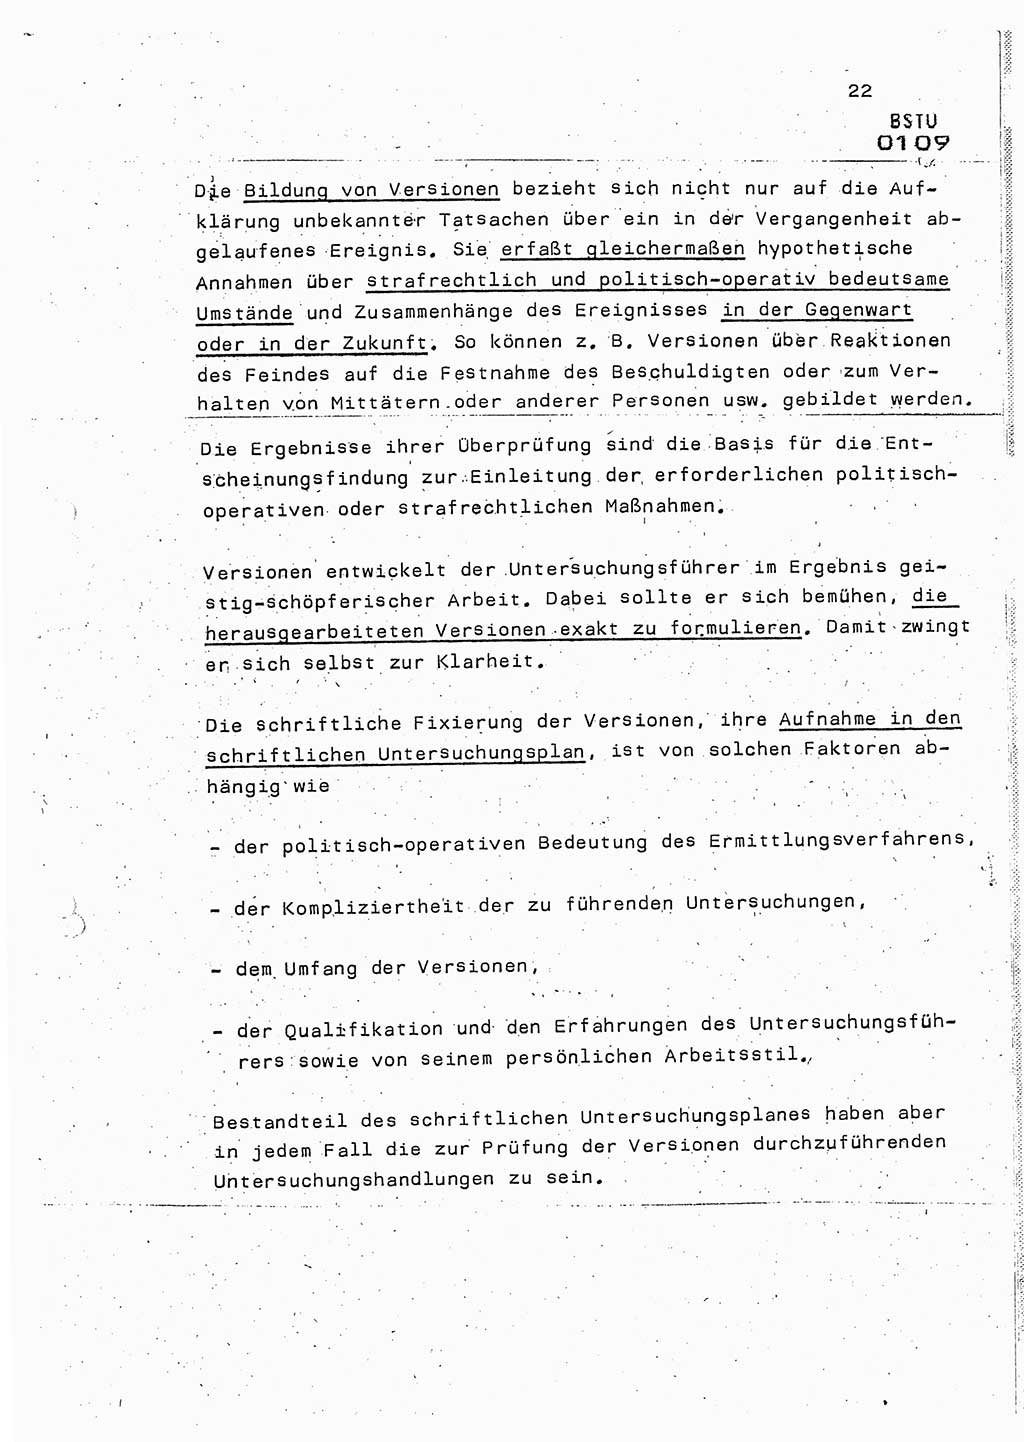 Lektion Ministerium für Staatssicherheit (MfS) [Deutsche Demokratische Republik (DDR)], Hauptabteilung (HA) Ⅸ, Berlin 1987, Seite 22 (Lekt. Pln. Bearb. EV MfS DDR HA Ⅸ /87 1987, S. 22)